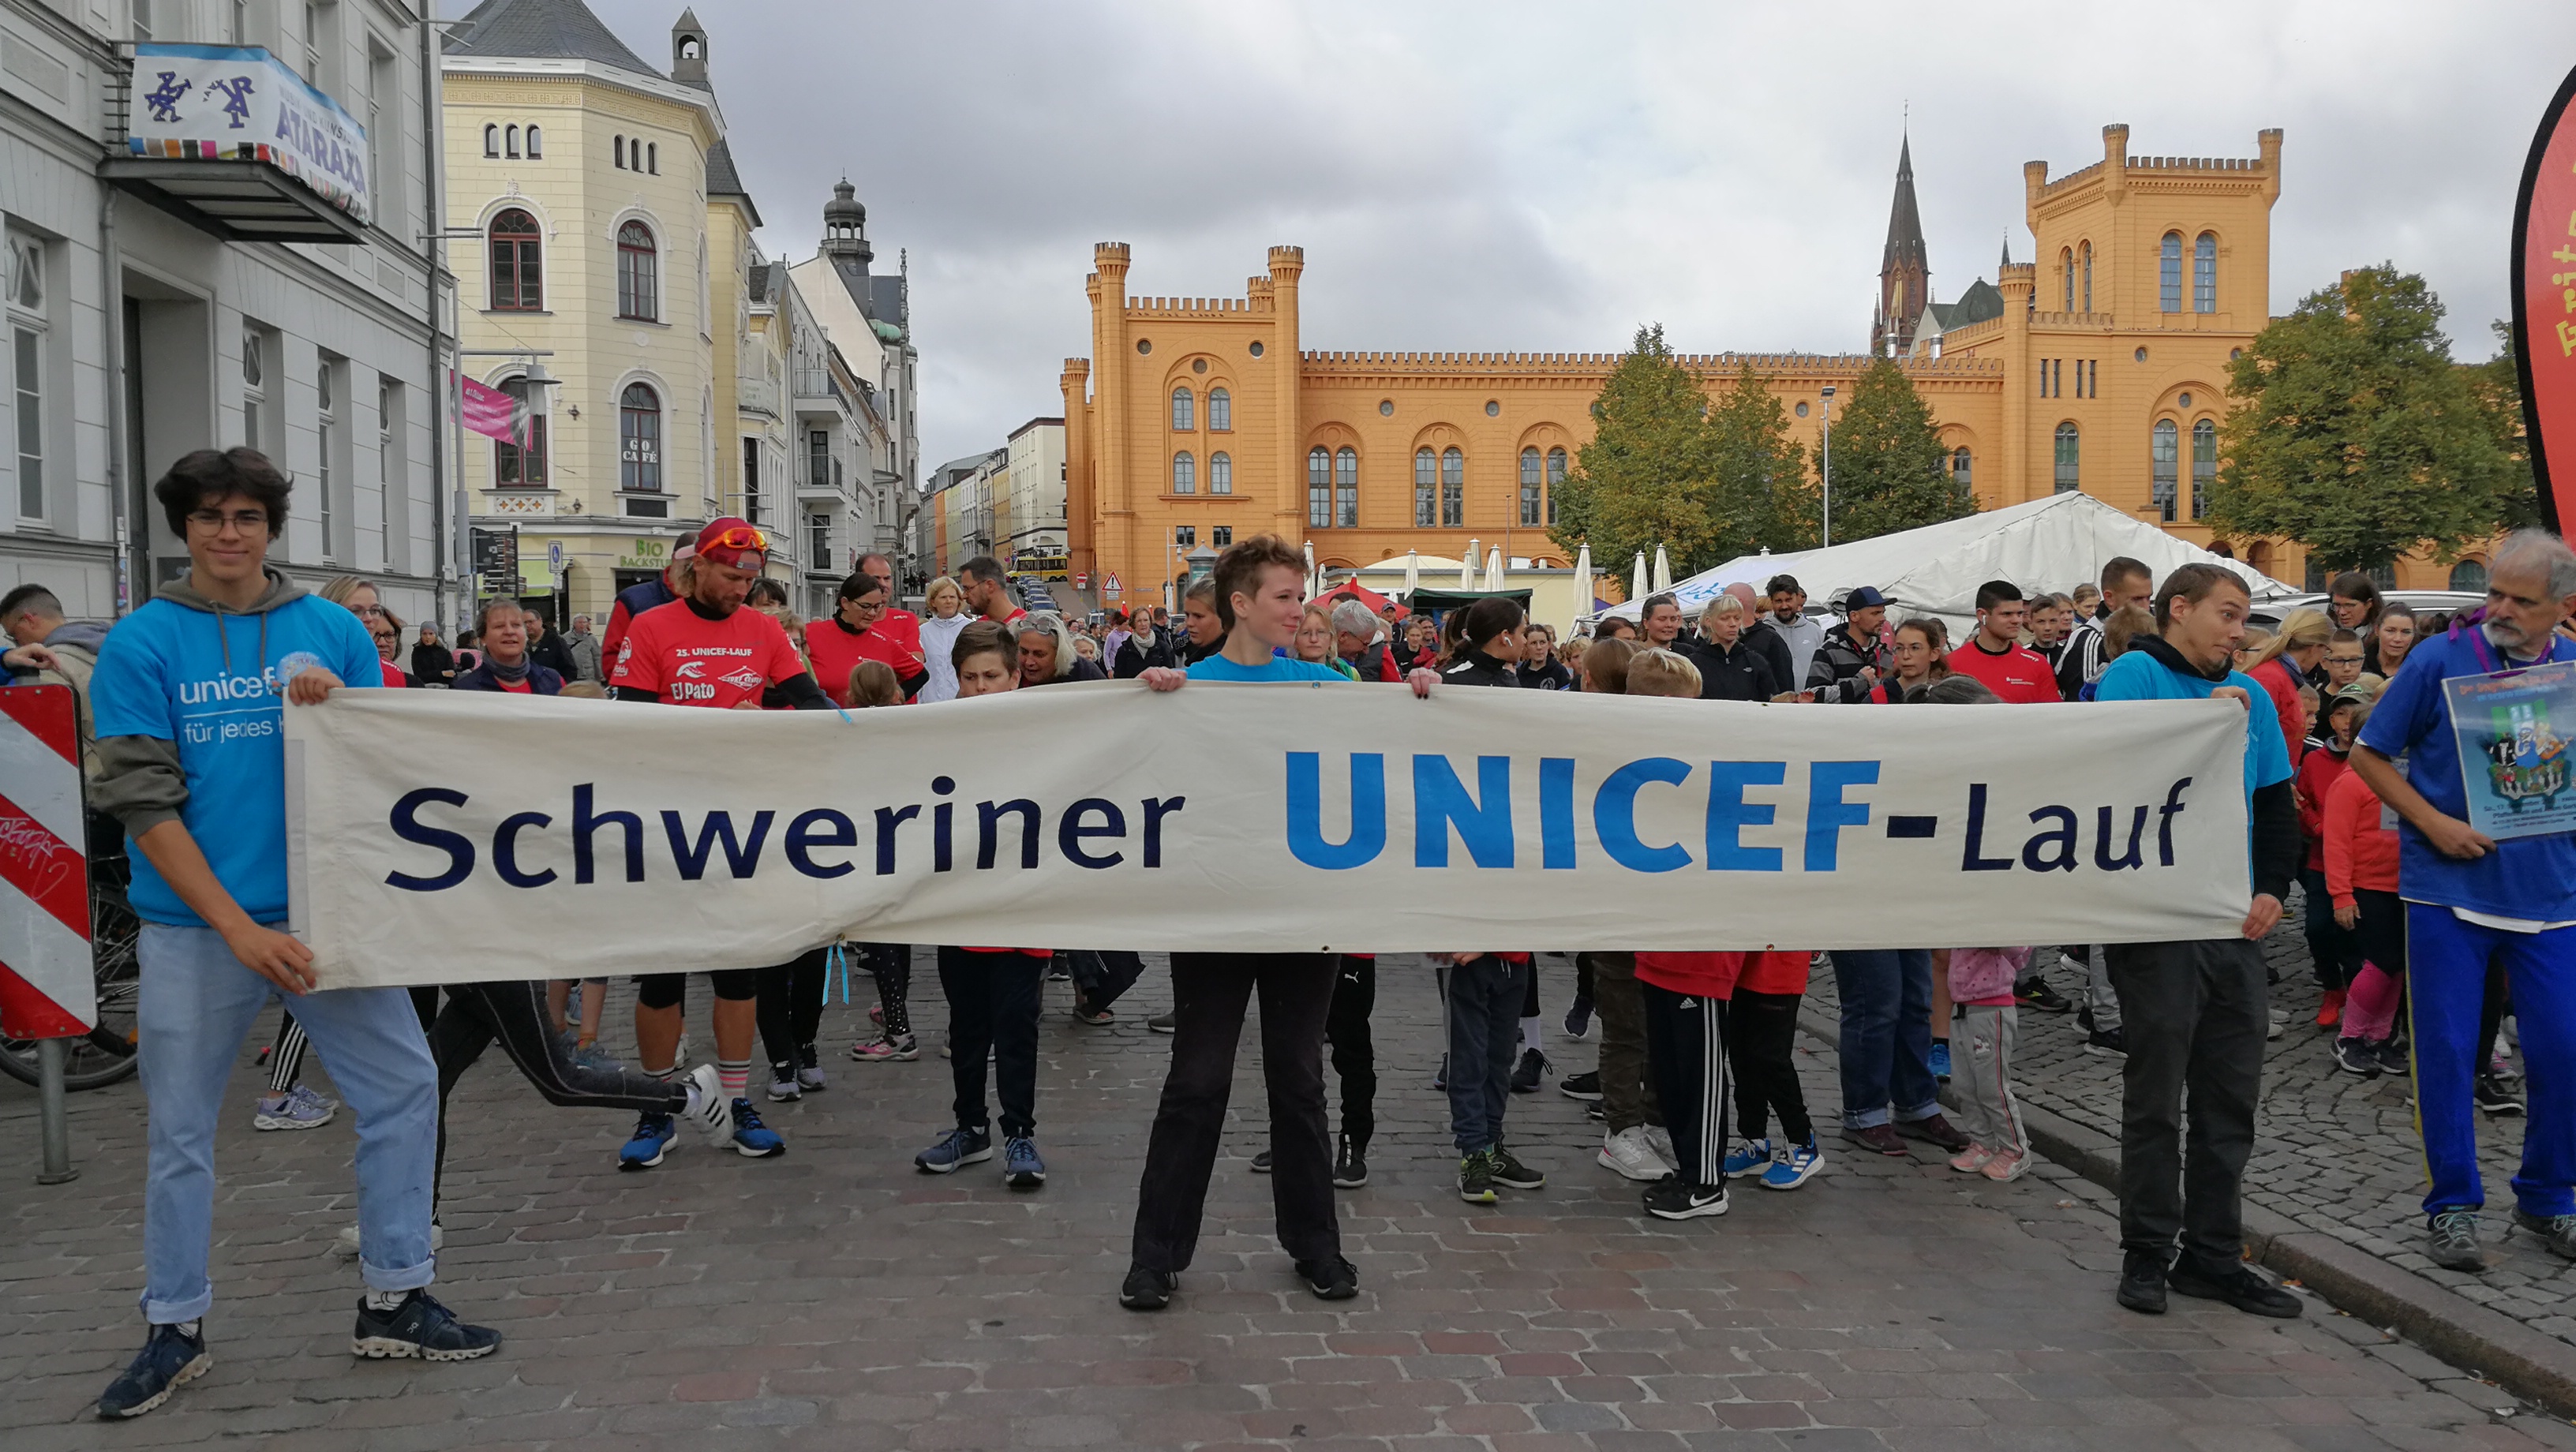 25UNICEF-Lauf-2022-Start © UNICEF-Arbeitsgruppe